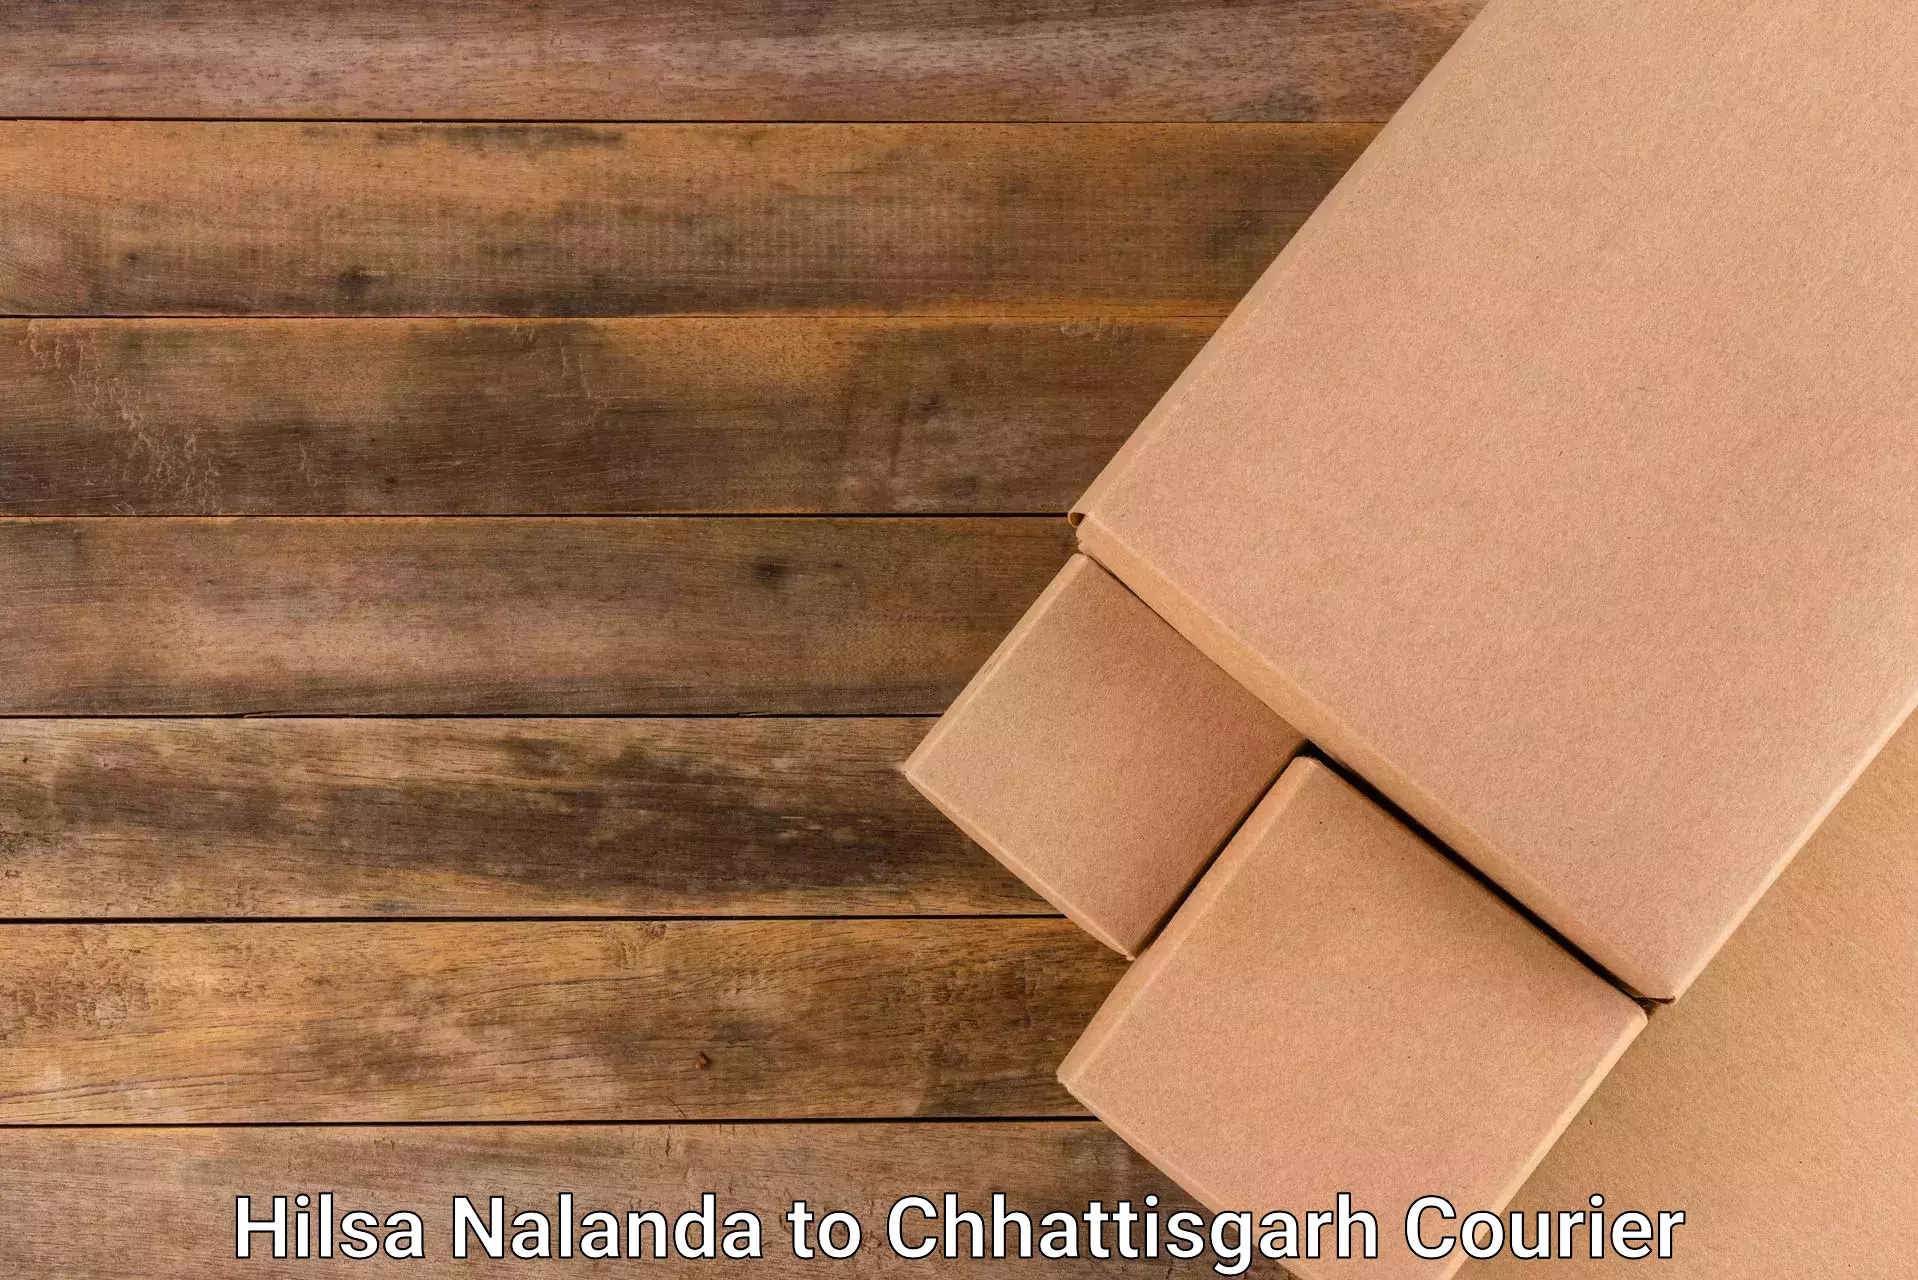 Customer-centric shipping Hilsa Nalanda to Raipur